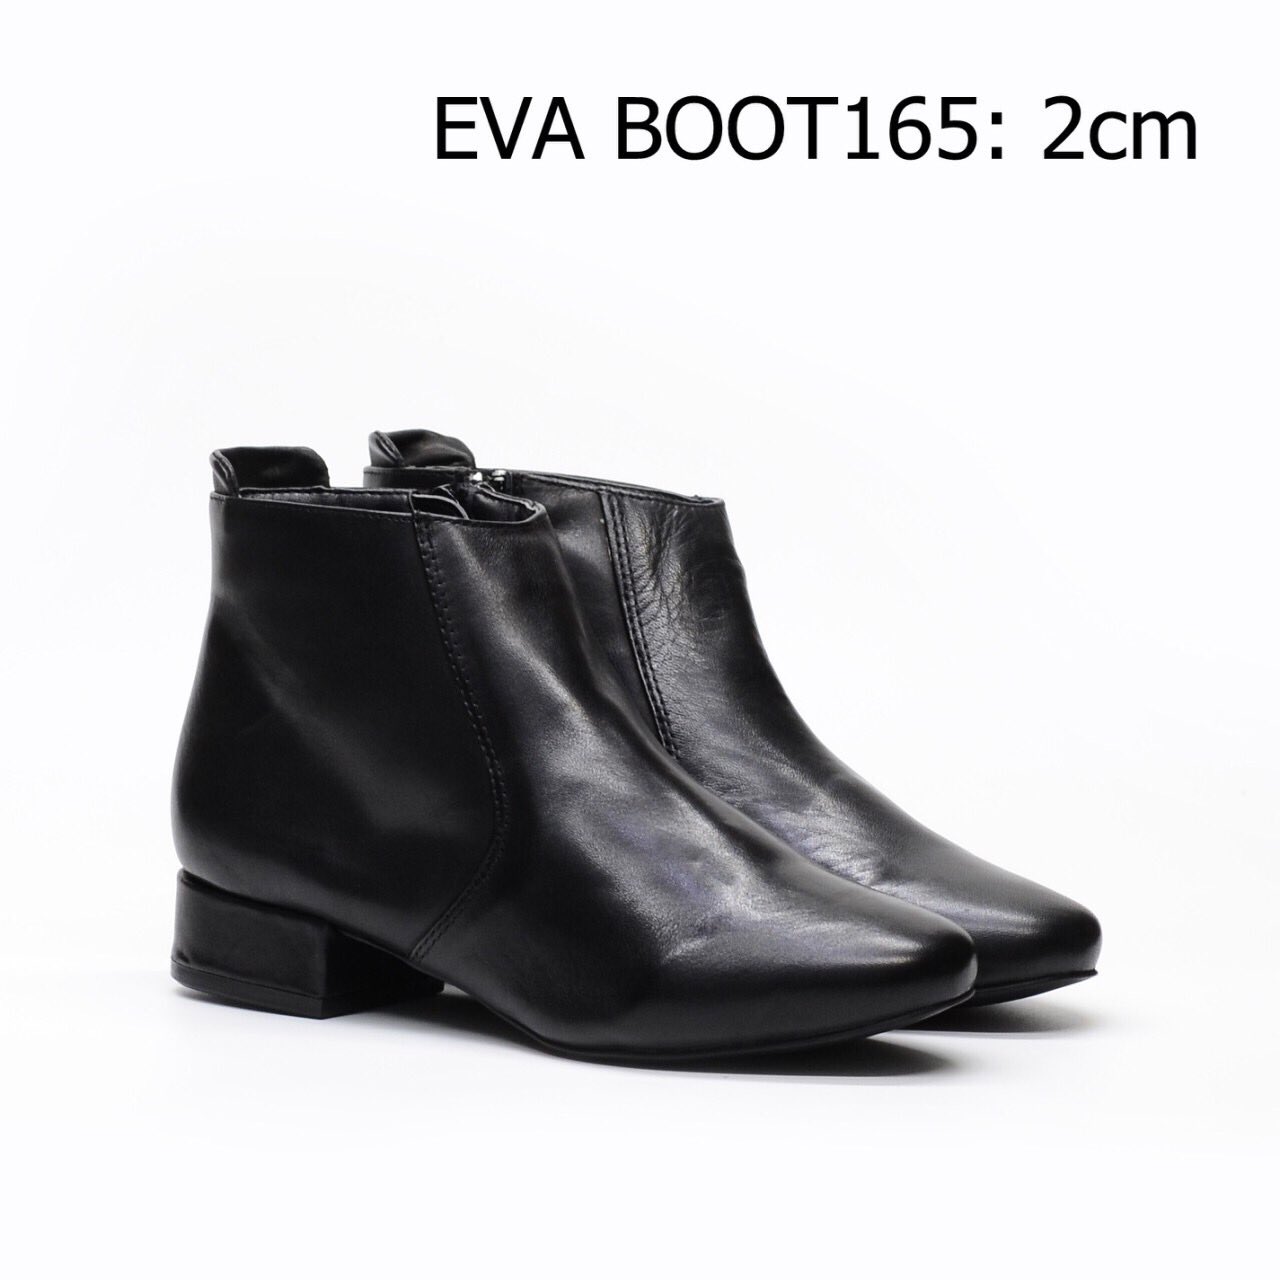 Boots da nữ EVA BOOT165 kiểu dáng cổ ngắn thời trang, chất liệu da bò cao cấp